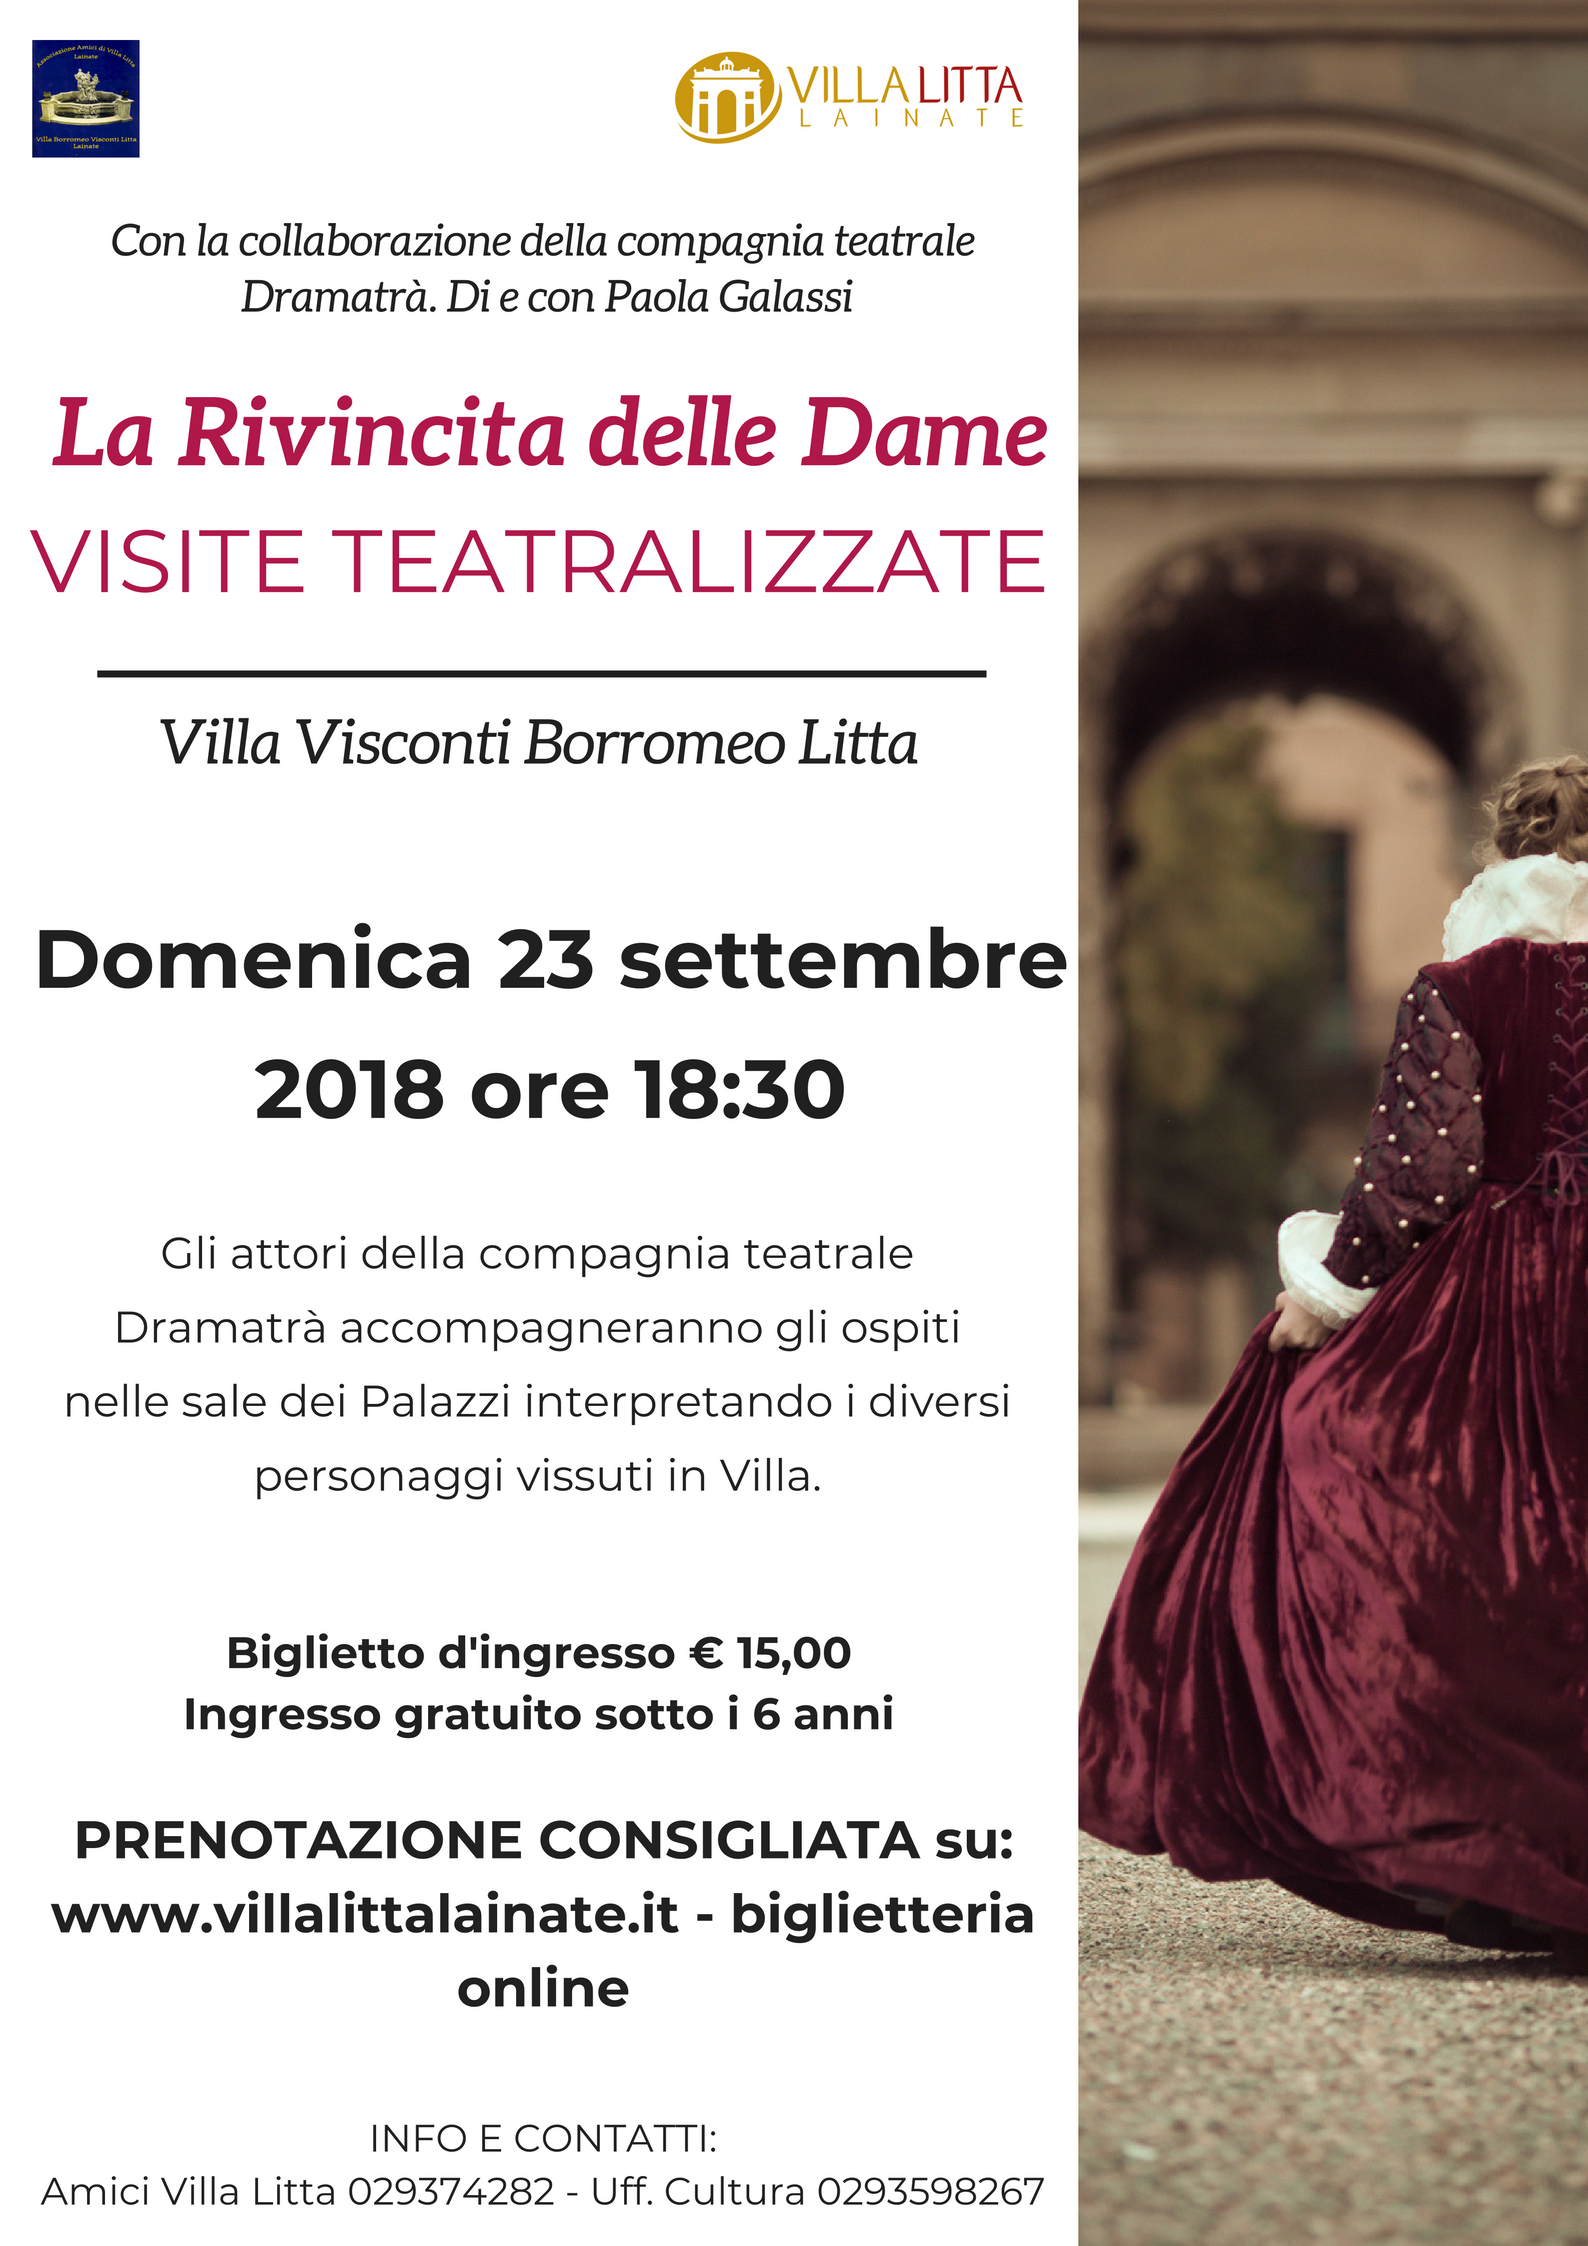 La Rivincita delle Dame - Visita teatralizzata a Villa Litta